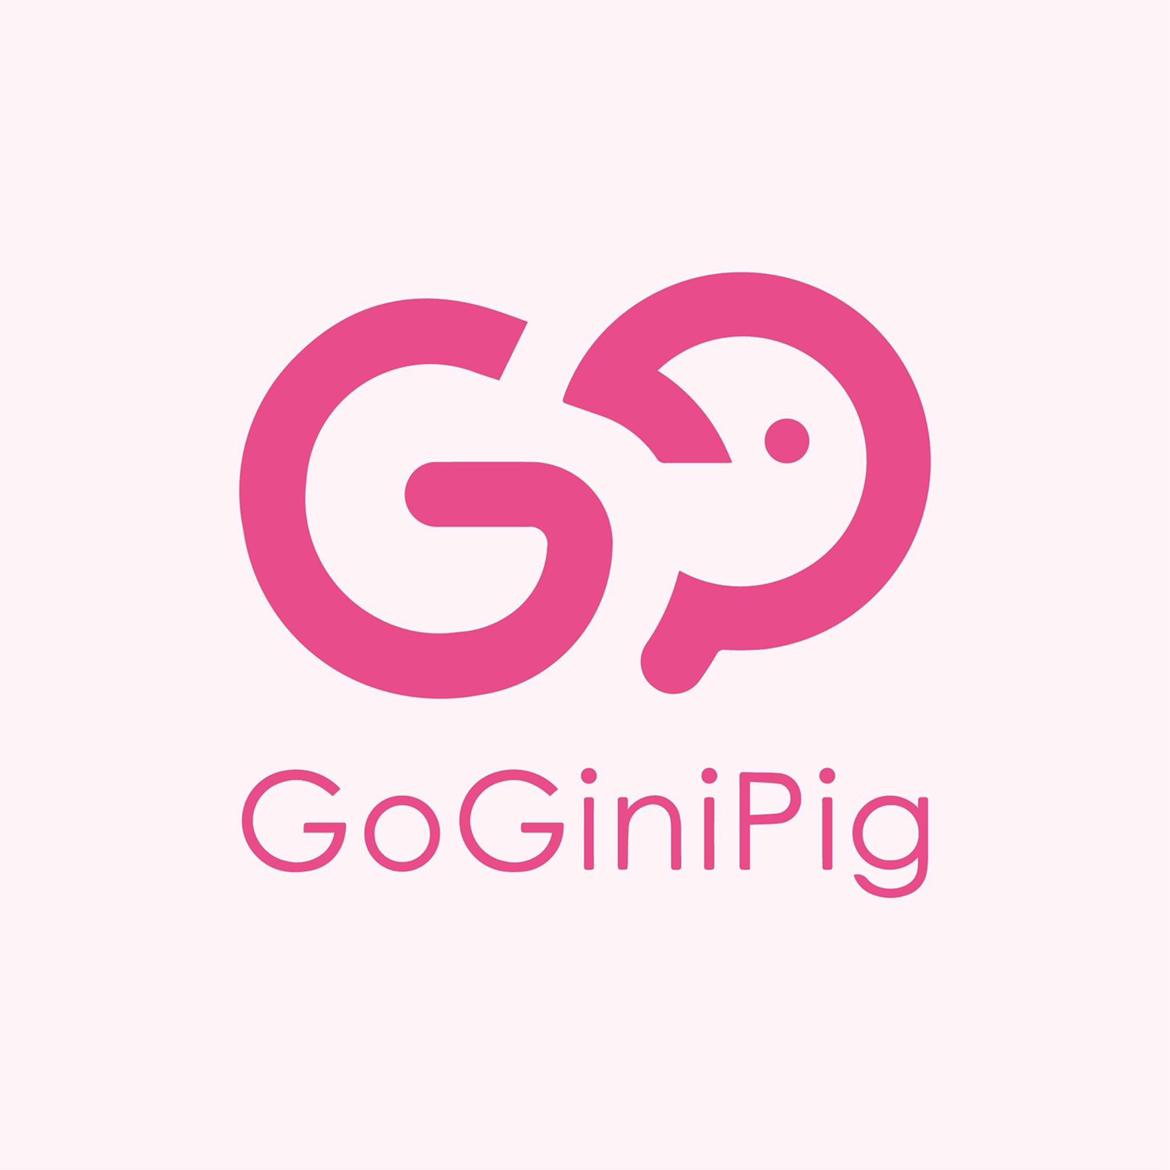 GoGiniPig's images